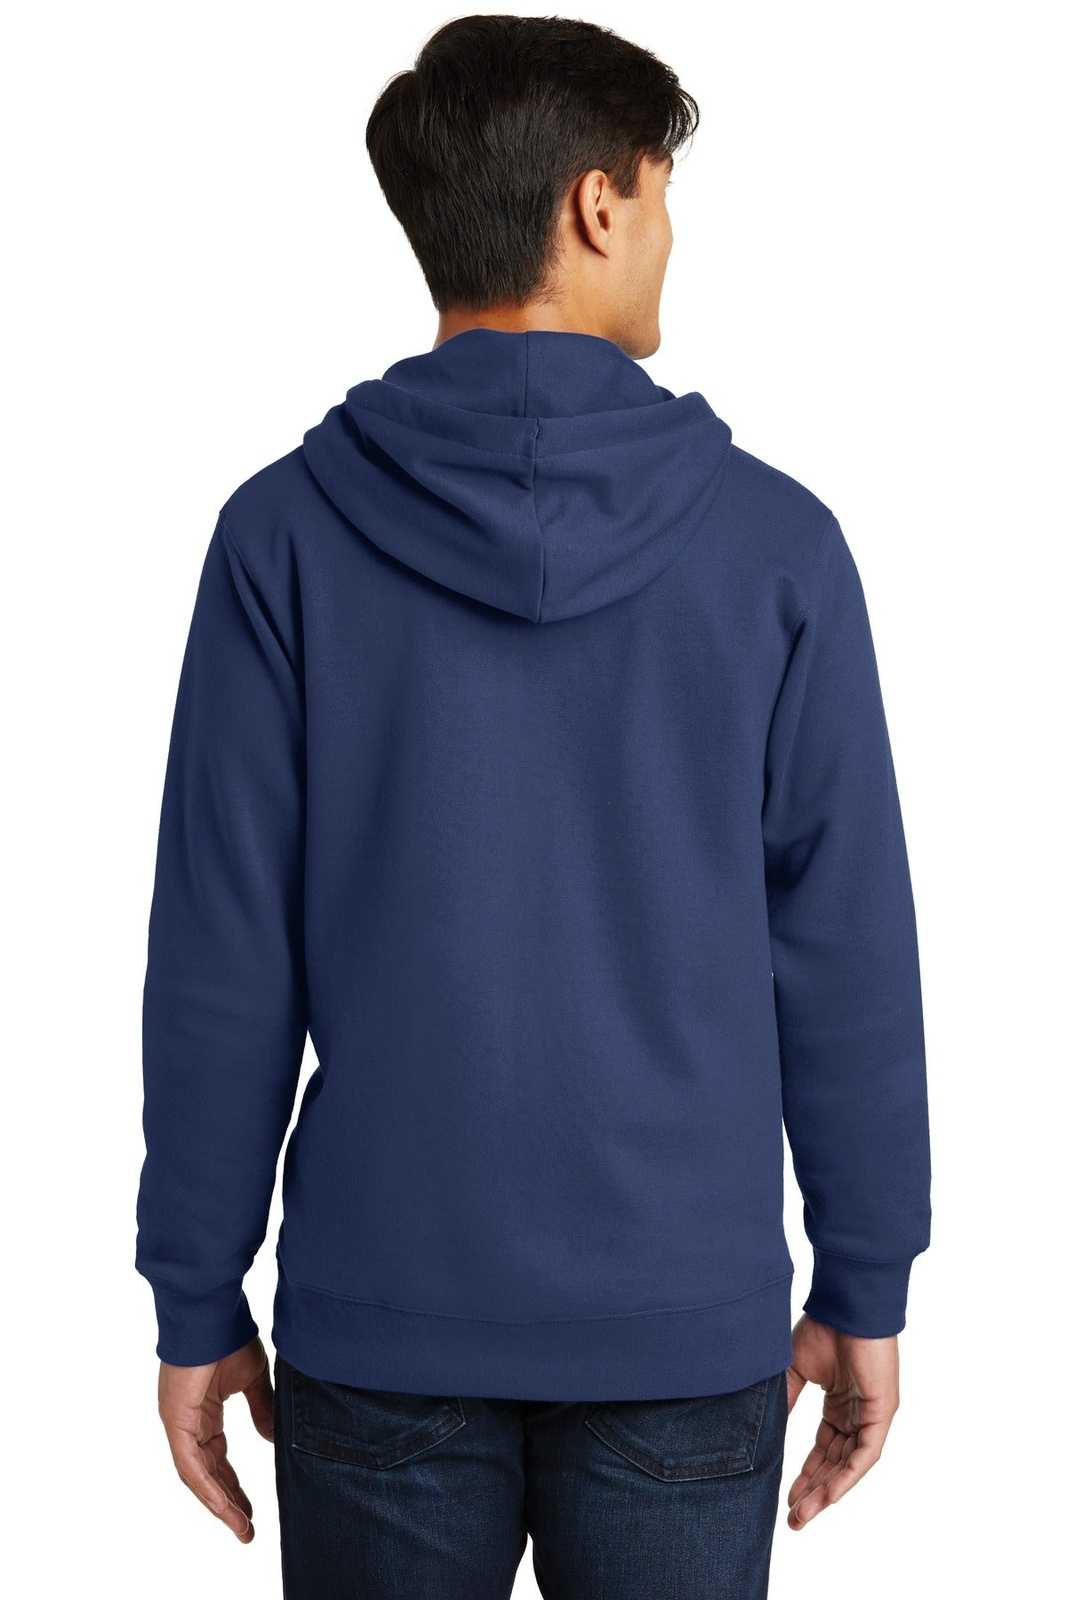 Port &amp; Company PC850ZH Fan Favorite Fleece Full-Zip Hooded Sweatshirt - Team Navy - HIT a Double - 2